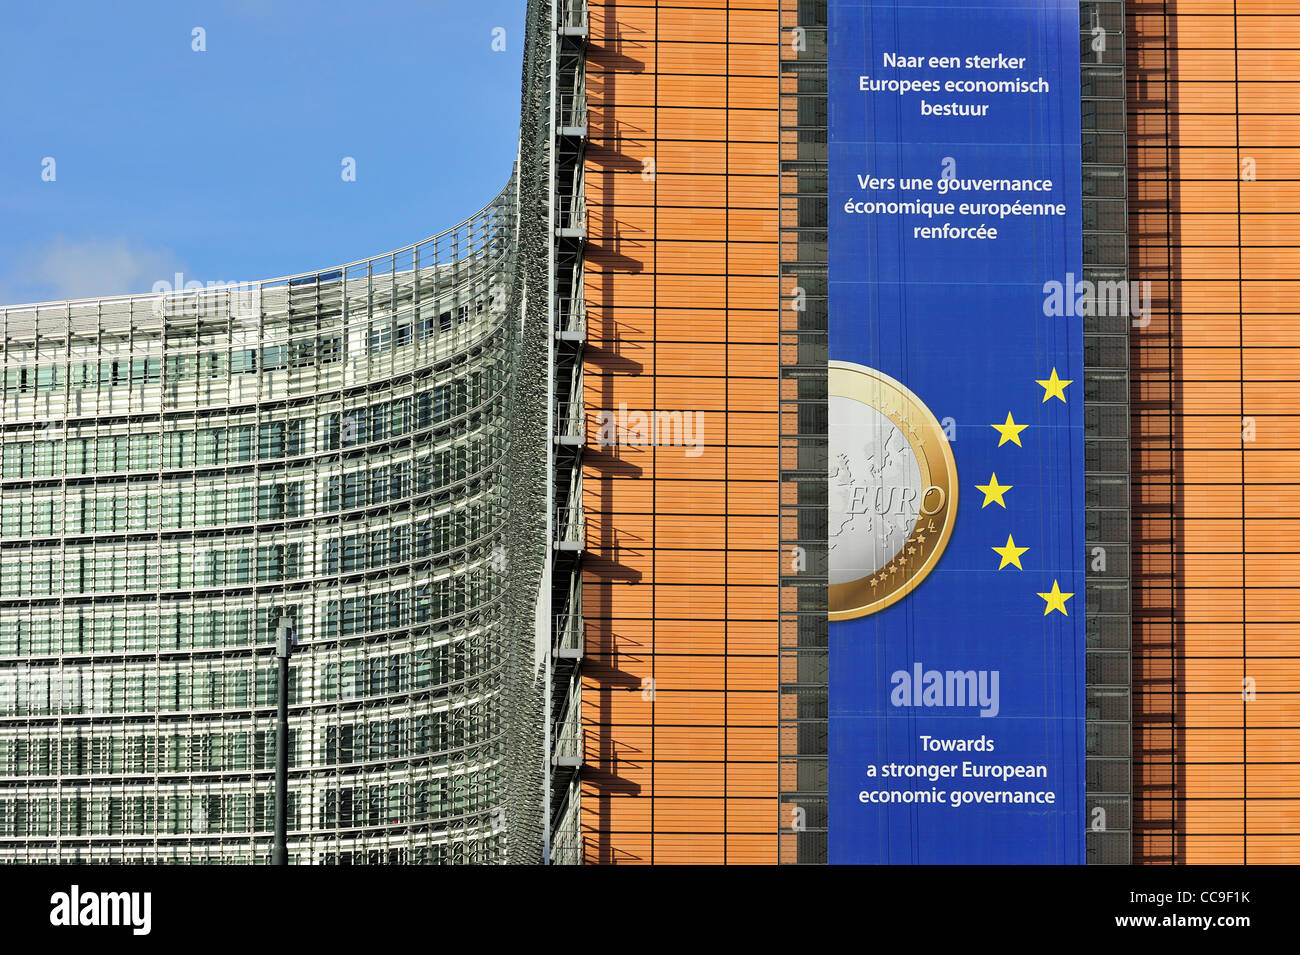 La Commission européenne, organe exécutif de l'Union européenne, basée dans le bâtiment Berlaymont de Bruxelles, Belgique Banque D'Images